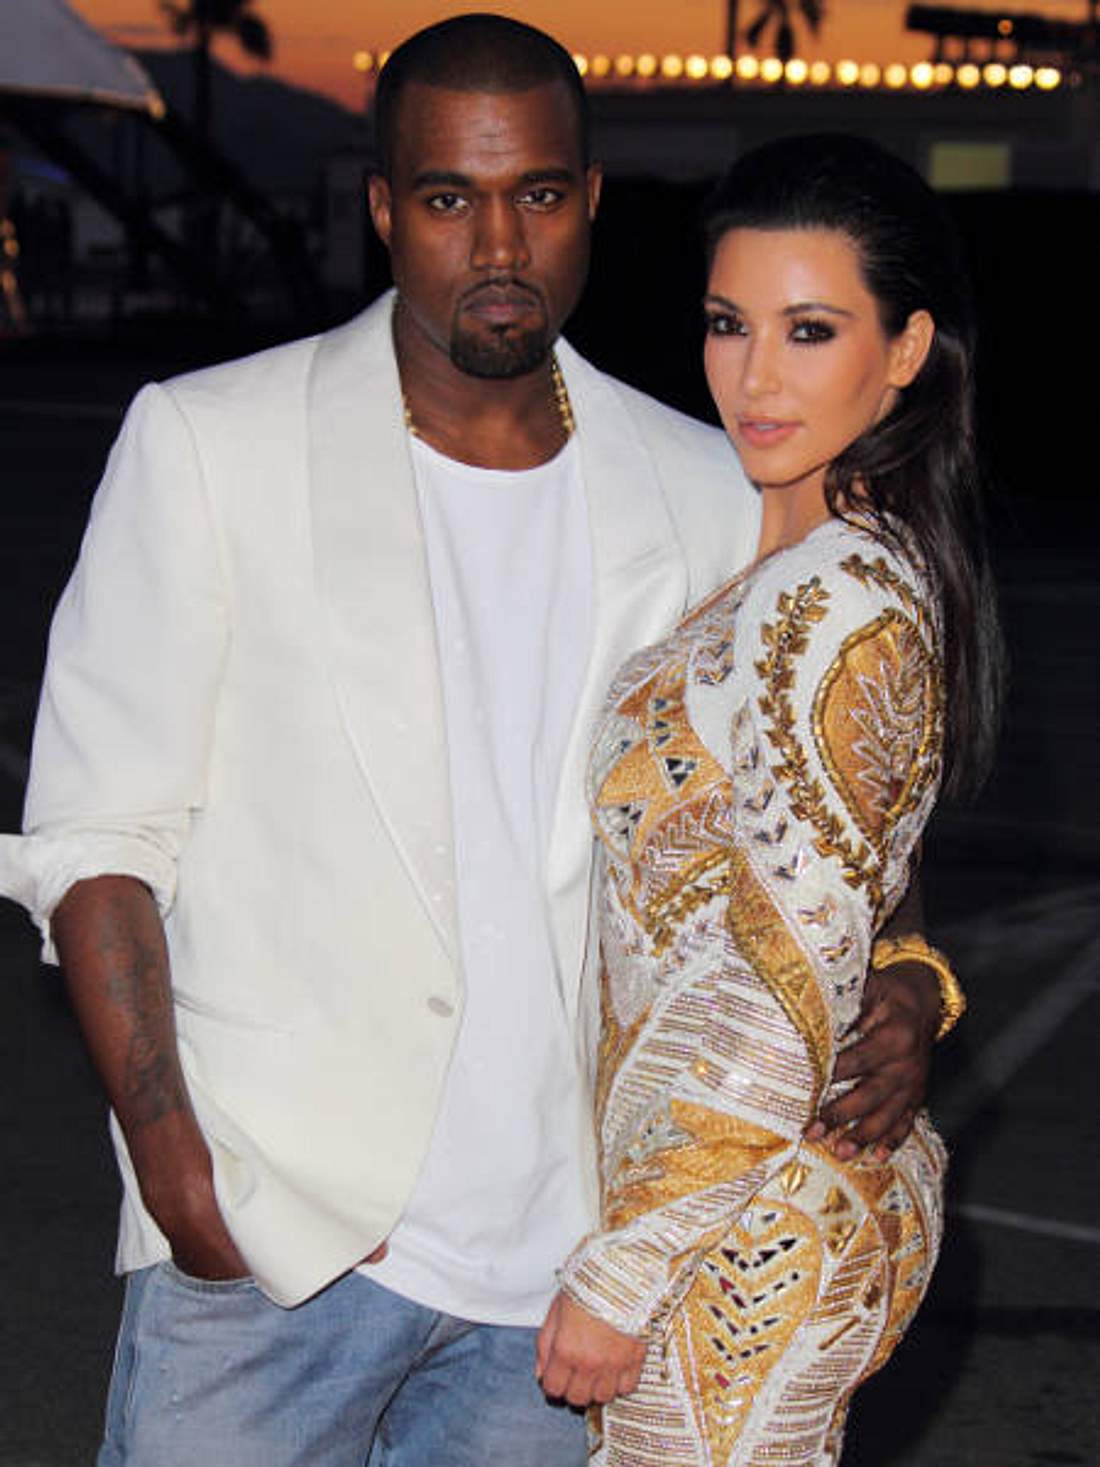 Promi-Paare und ihre Fake-BeziehungenKim Kardashian (31) wird ja seit jeher eine ziemliche - pardon - Mediengeilheit vorgeworfen. Deshalb wird dem Reality-Show-Star jetzt auch unterstellt, ihre Beziehung mit Kanye West (34) sei ein abgekart